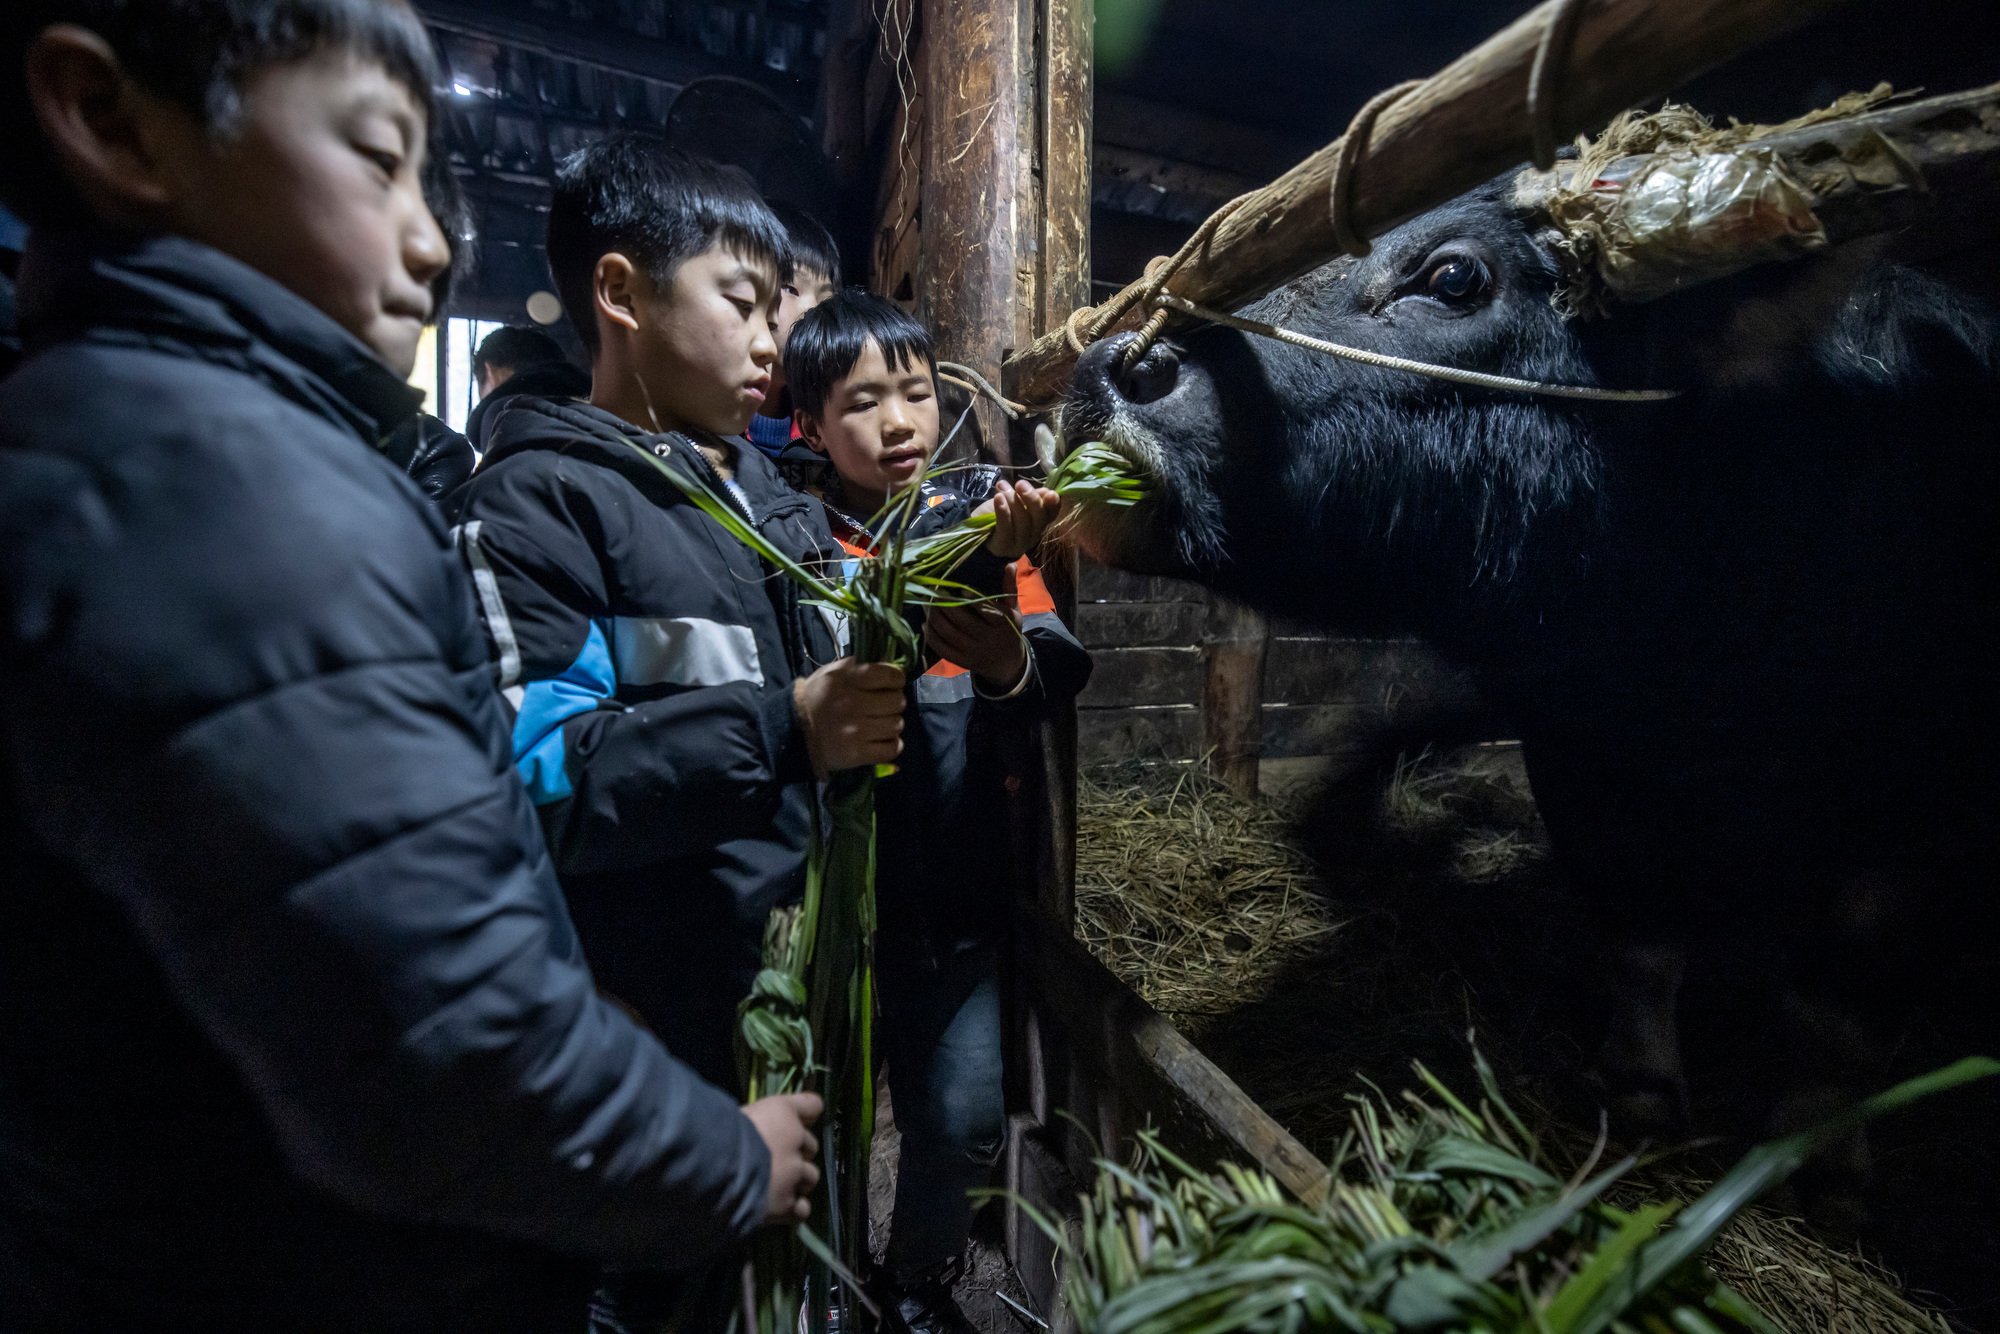  Kids feeding the buffalo before the buffalo fight in the Qiandongnan village in Guizhou, China. 